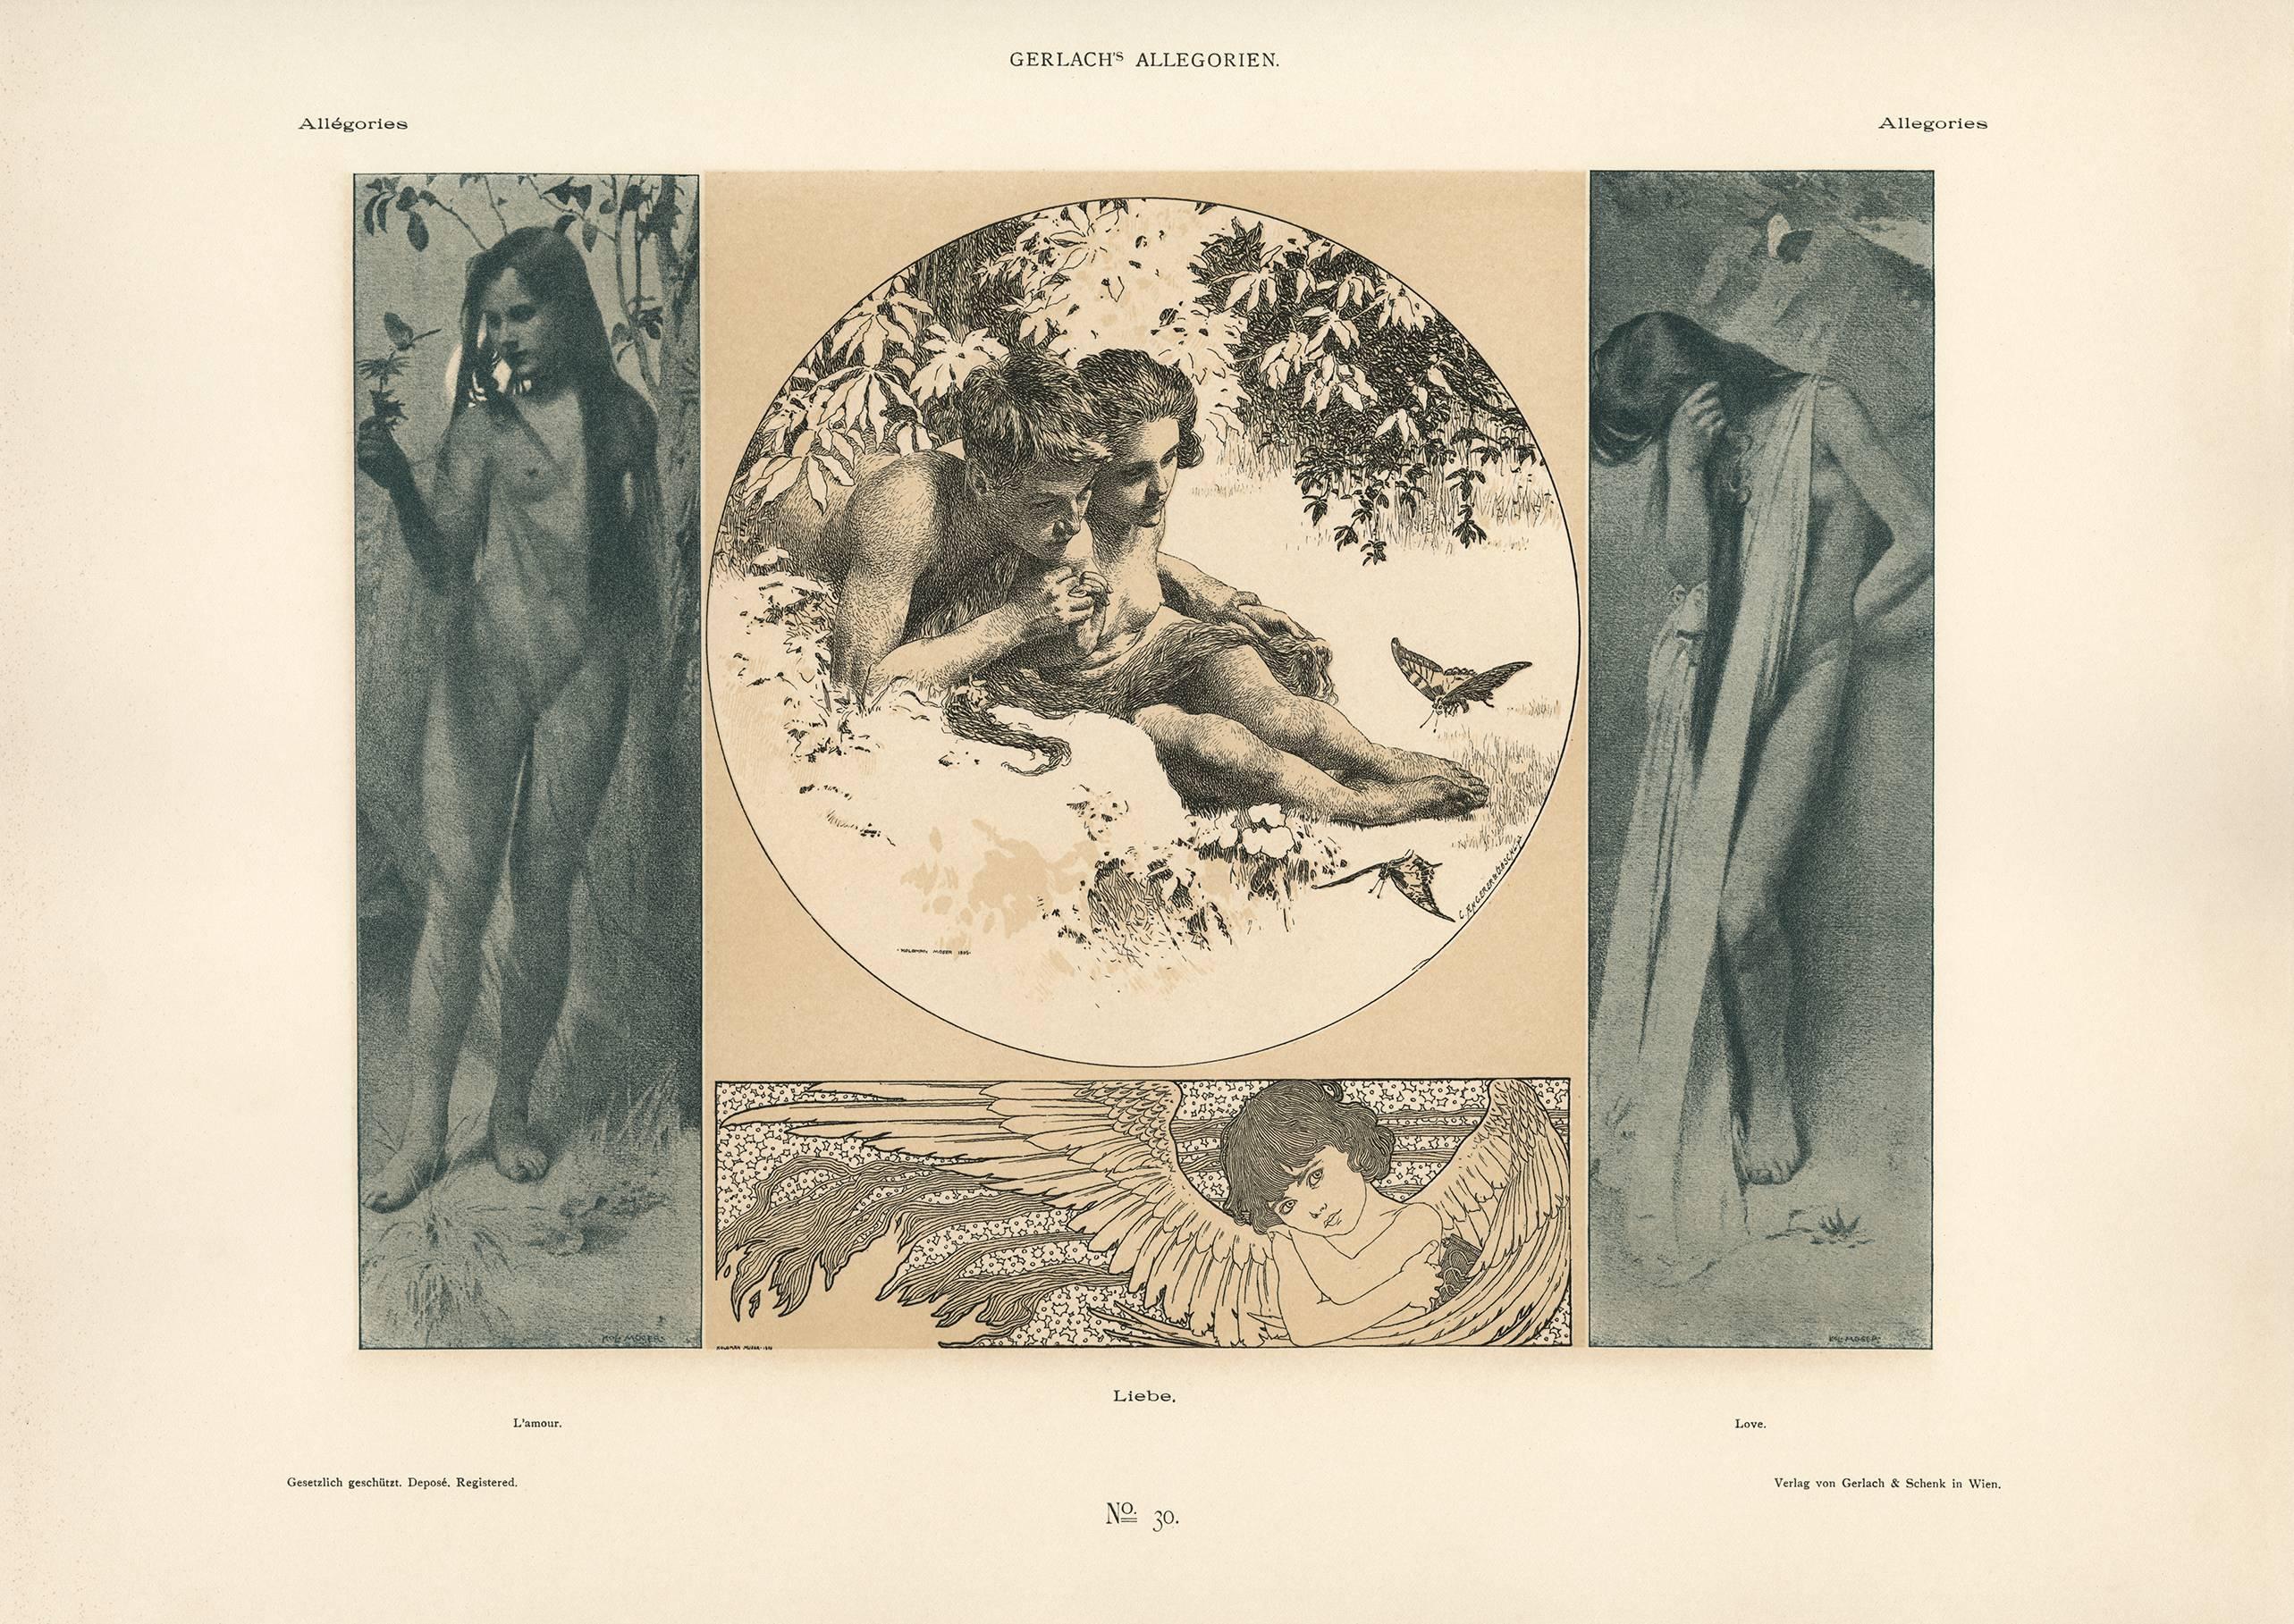 Koloman Moser Figurative Print - Gerlach's Allegorien Plate #30: "Love" Lithograph